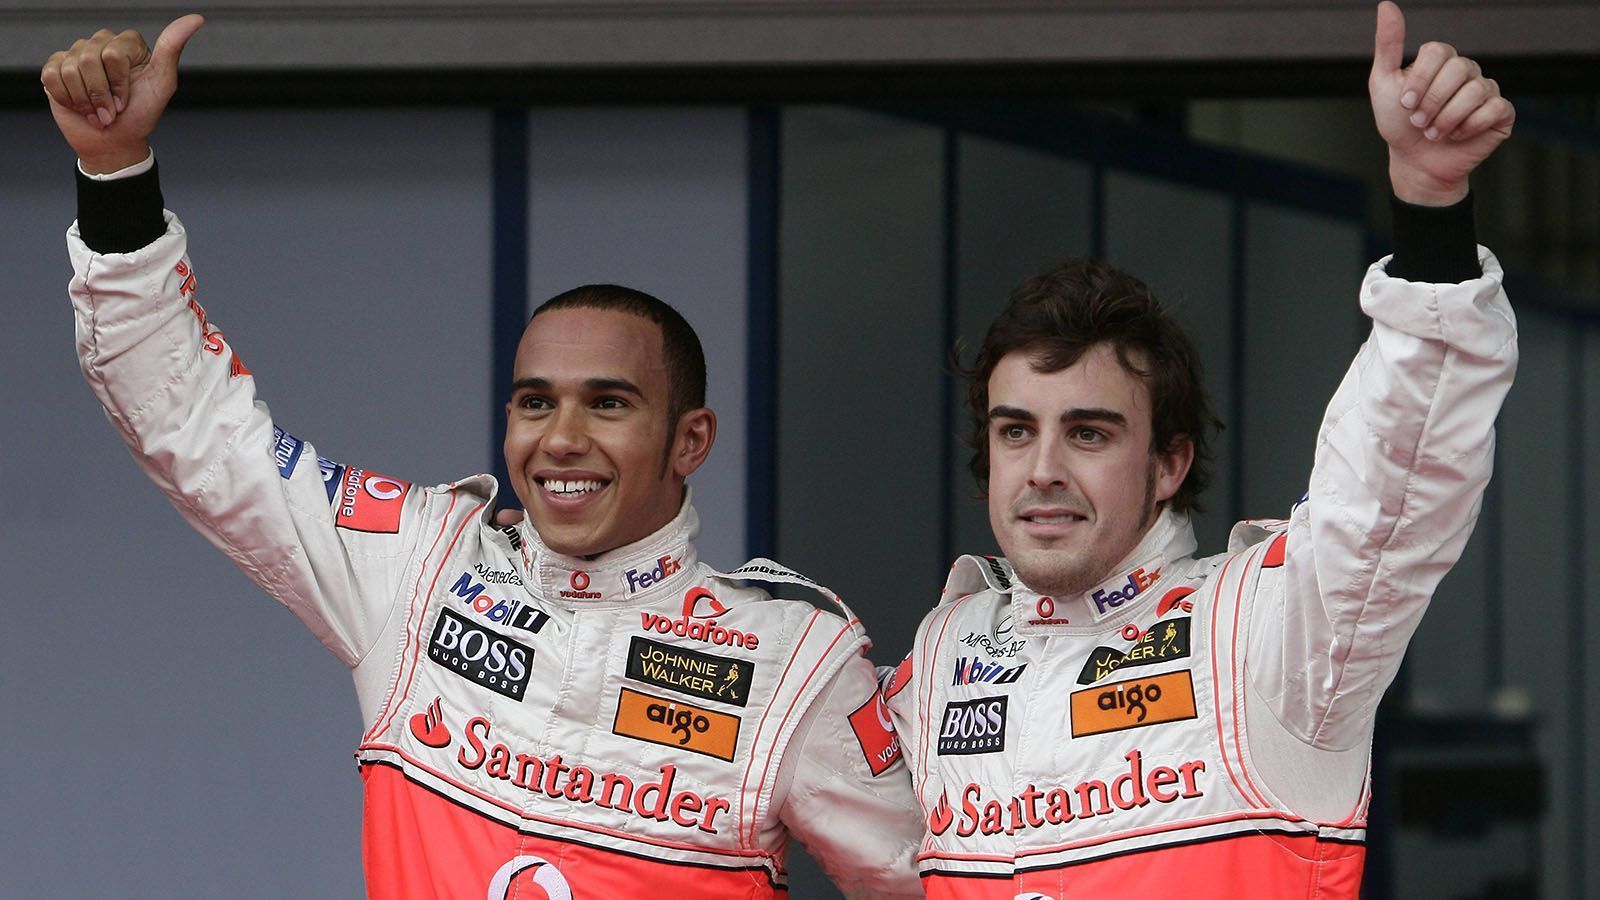 
                <strong>Lewis Hamilton gegen Fernando Alonso (McLaren)</strong><br>
                Noch lang bevor Lewis Hamilton und Nico Rosberg aufeinandertrafen, lieferte sich der Brite eine kurze, aber intensive, interne Team-Rivalität mit Fernando Alonso. Der Spanier war 2007, als amtierender Doppelweltmeister, von Renault zu McLaren gewechselt und fand sich in einem Team mit dem jungen Lewis Hamilton, der zu diesem Zeitpunkt noch kein Rennen in der Formel 1 gefahren war, wieder. Anders als gedacht, hatte der Spanier Probleme den Briten zu dominieren. Ganz im Gegenteil: Hamilton zeigte von Beginn an, dass er klar mit Alonso mithalten konnte. Schnell wurde offensichtlich, dass dieser mit diesem Umstand seine Probleme hatte.
              